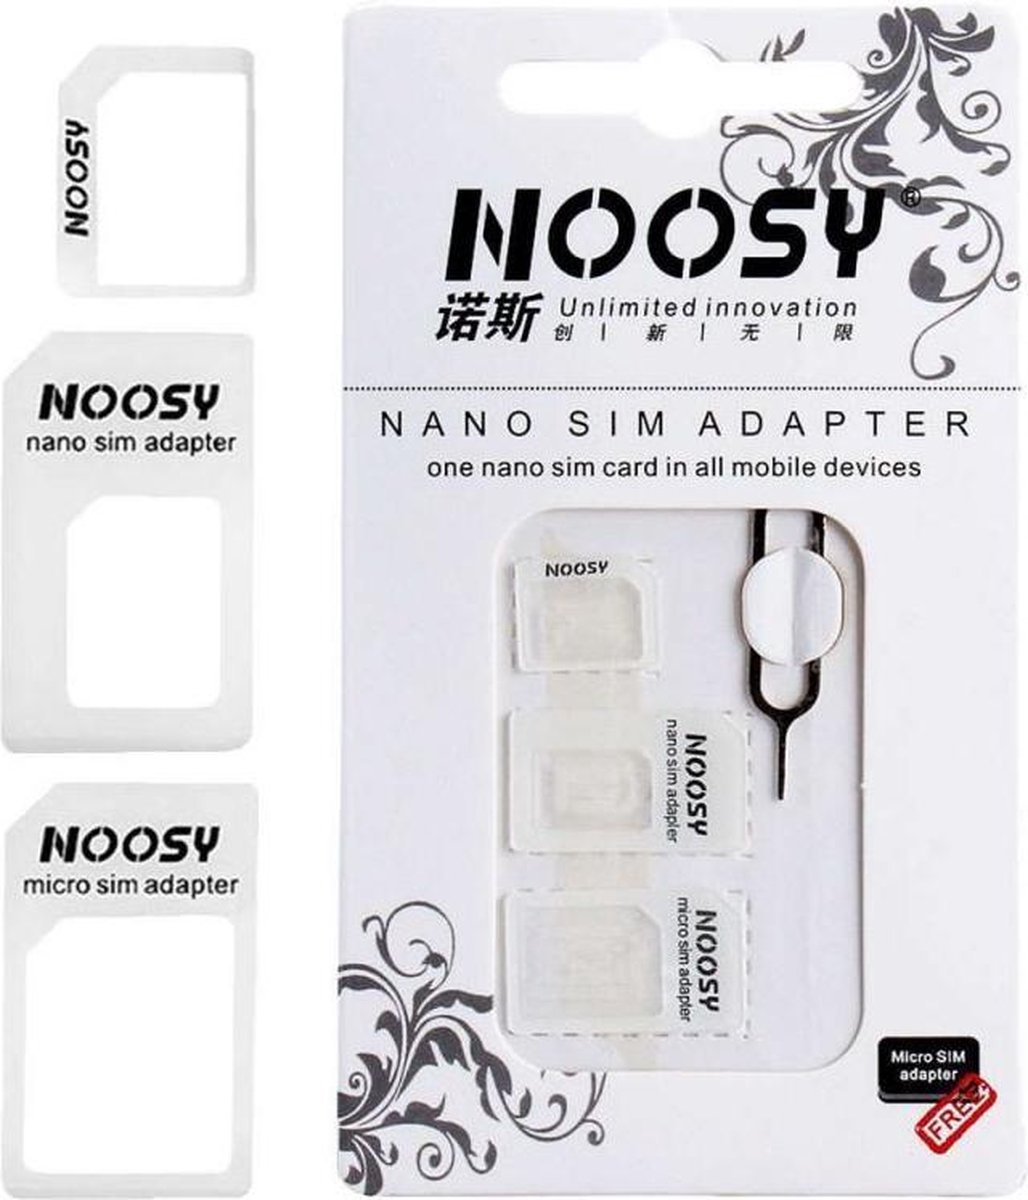 Noosy wit 4 In 1 Micro SIM Adapter / Nano Adapter / SIM Adapter met Eject Pin voor iPhone , HTC, Samsung, LG, Motorola, Sony, Nexus, Met SIM retail Box, Hoge Kwaliteit. - Noosy